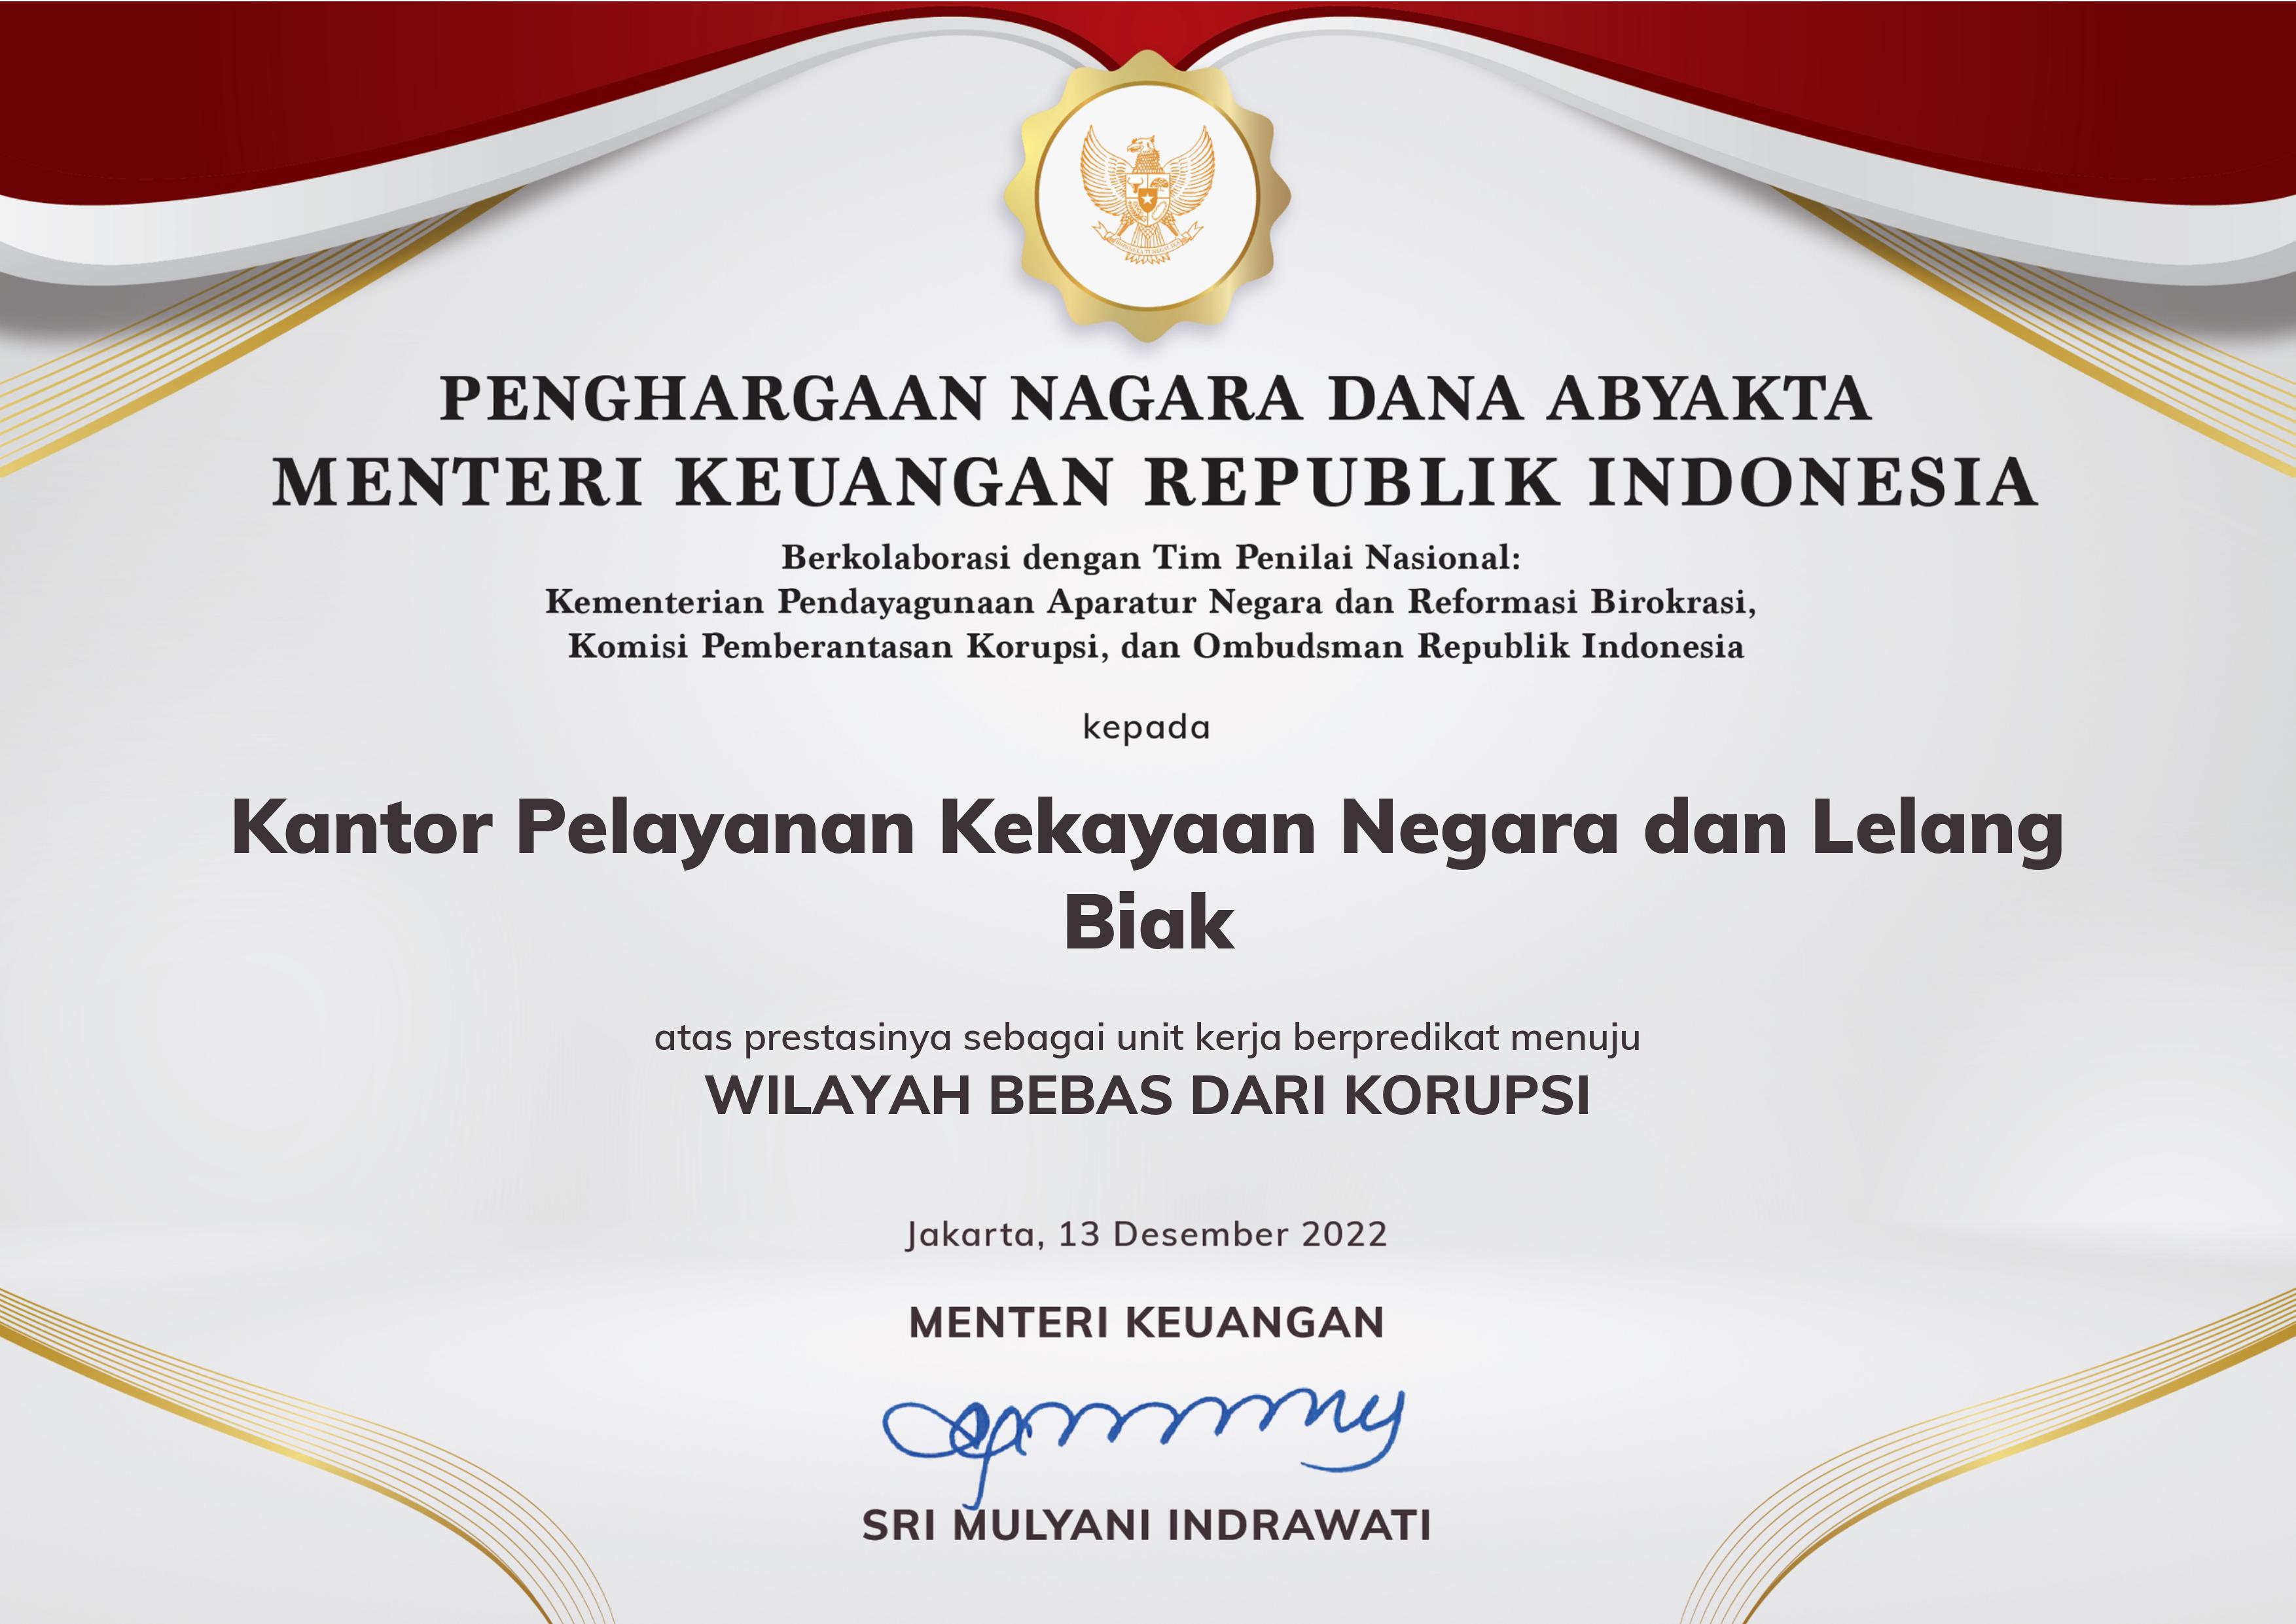 KPKNL Biak Raih Penghargaan Zona Integritas Wilayah Bebas dari Korupsi